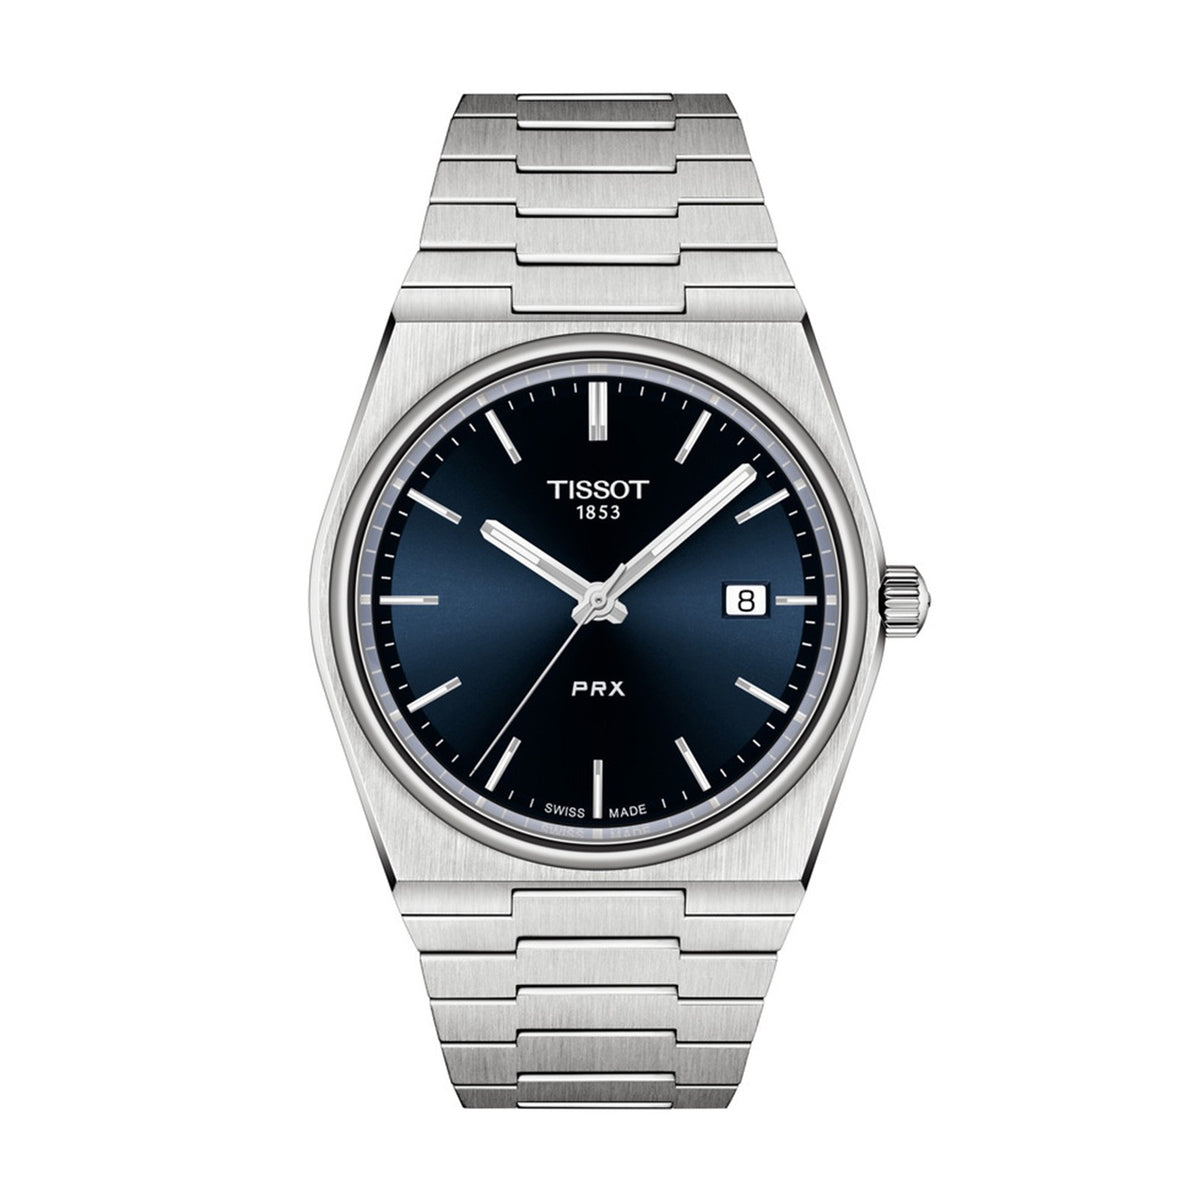 Swiss Watches For Sale @ BernardWatch.com